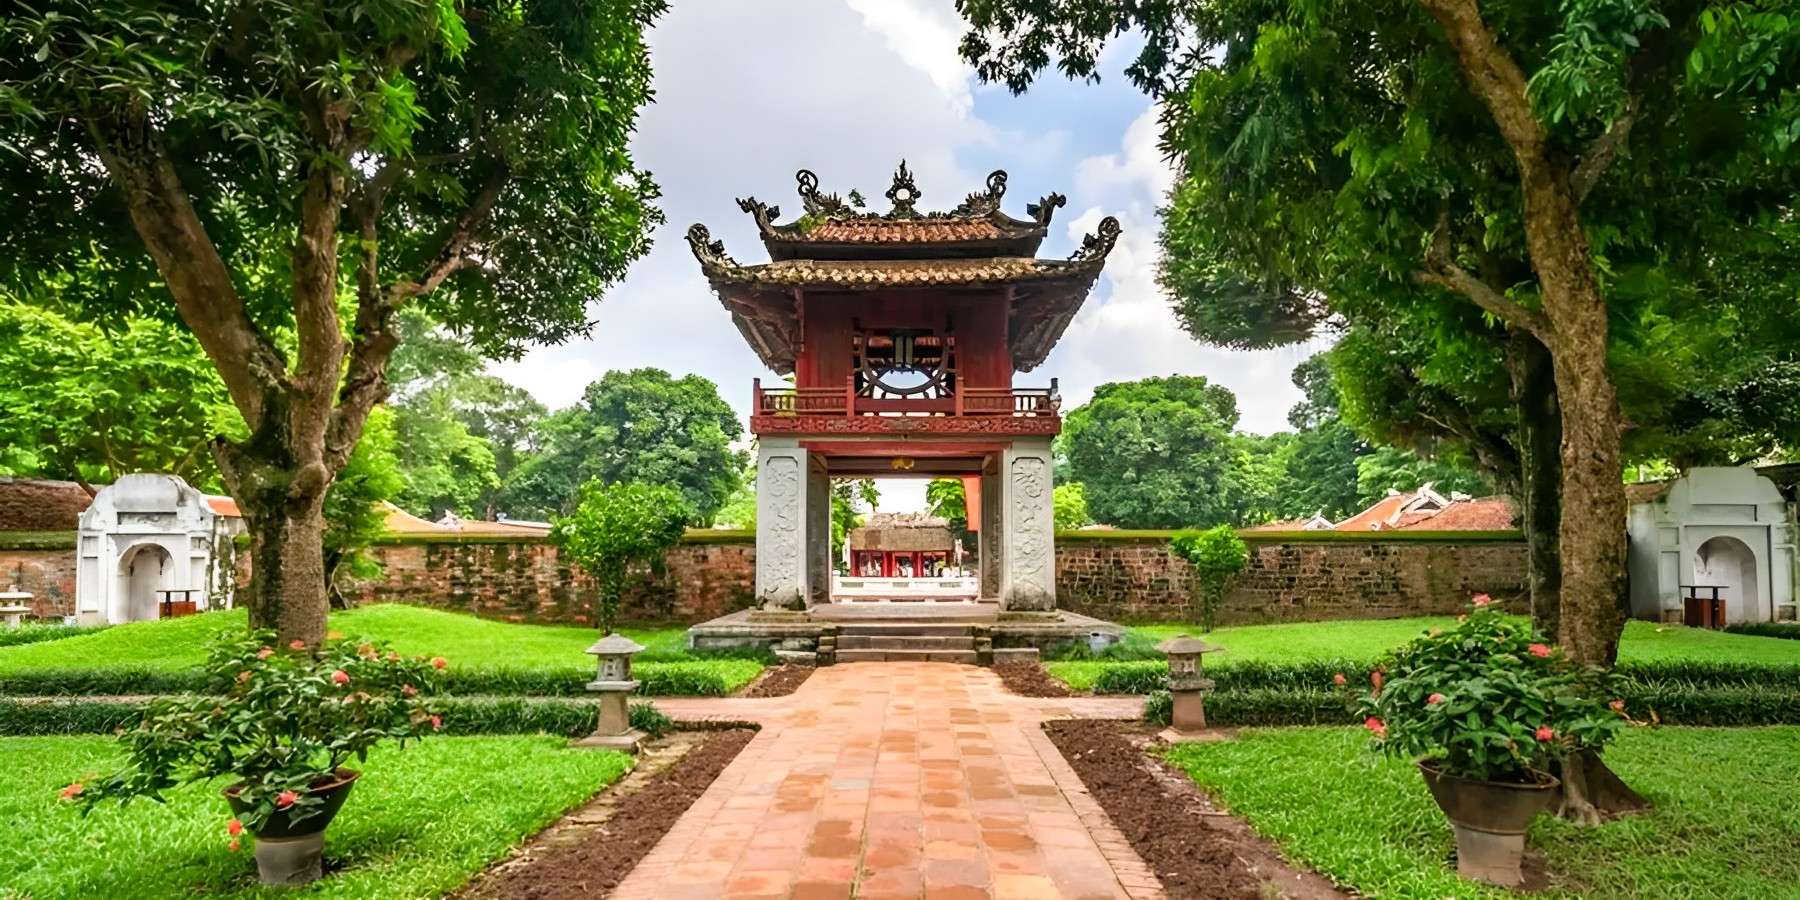 Temple of Literature, Hanoi - Hanoi tour